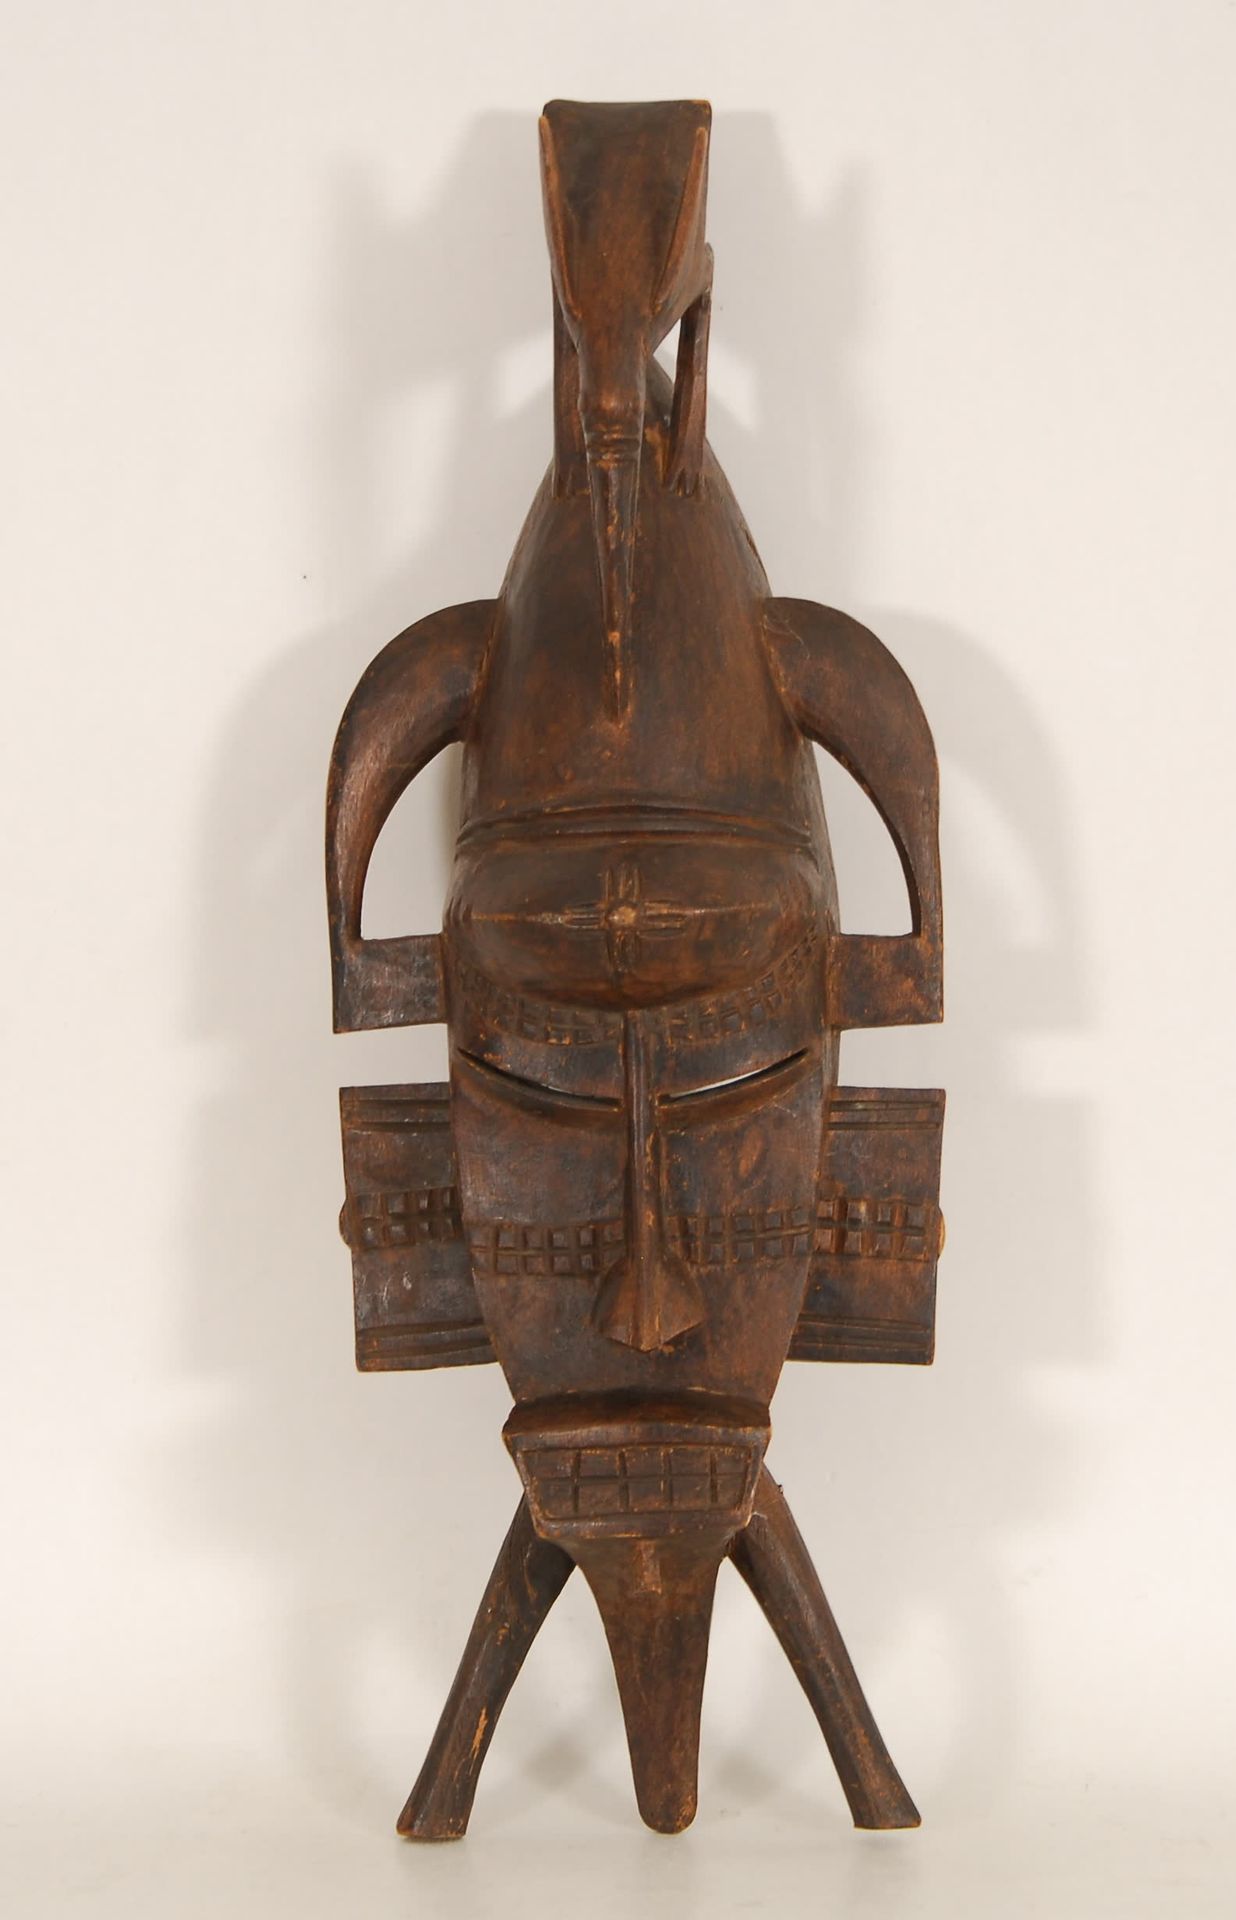 Afrique - Africa Máscara
Madera tallada, Costa de Marfil. 
H. 46 cm.